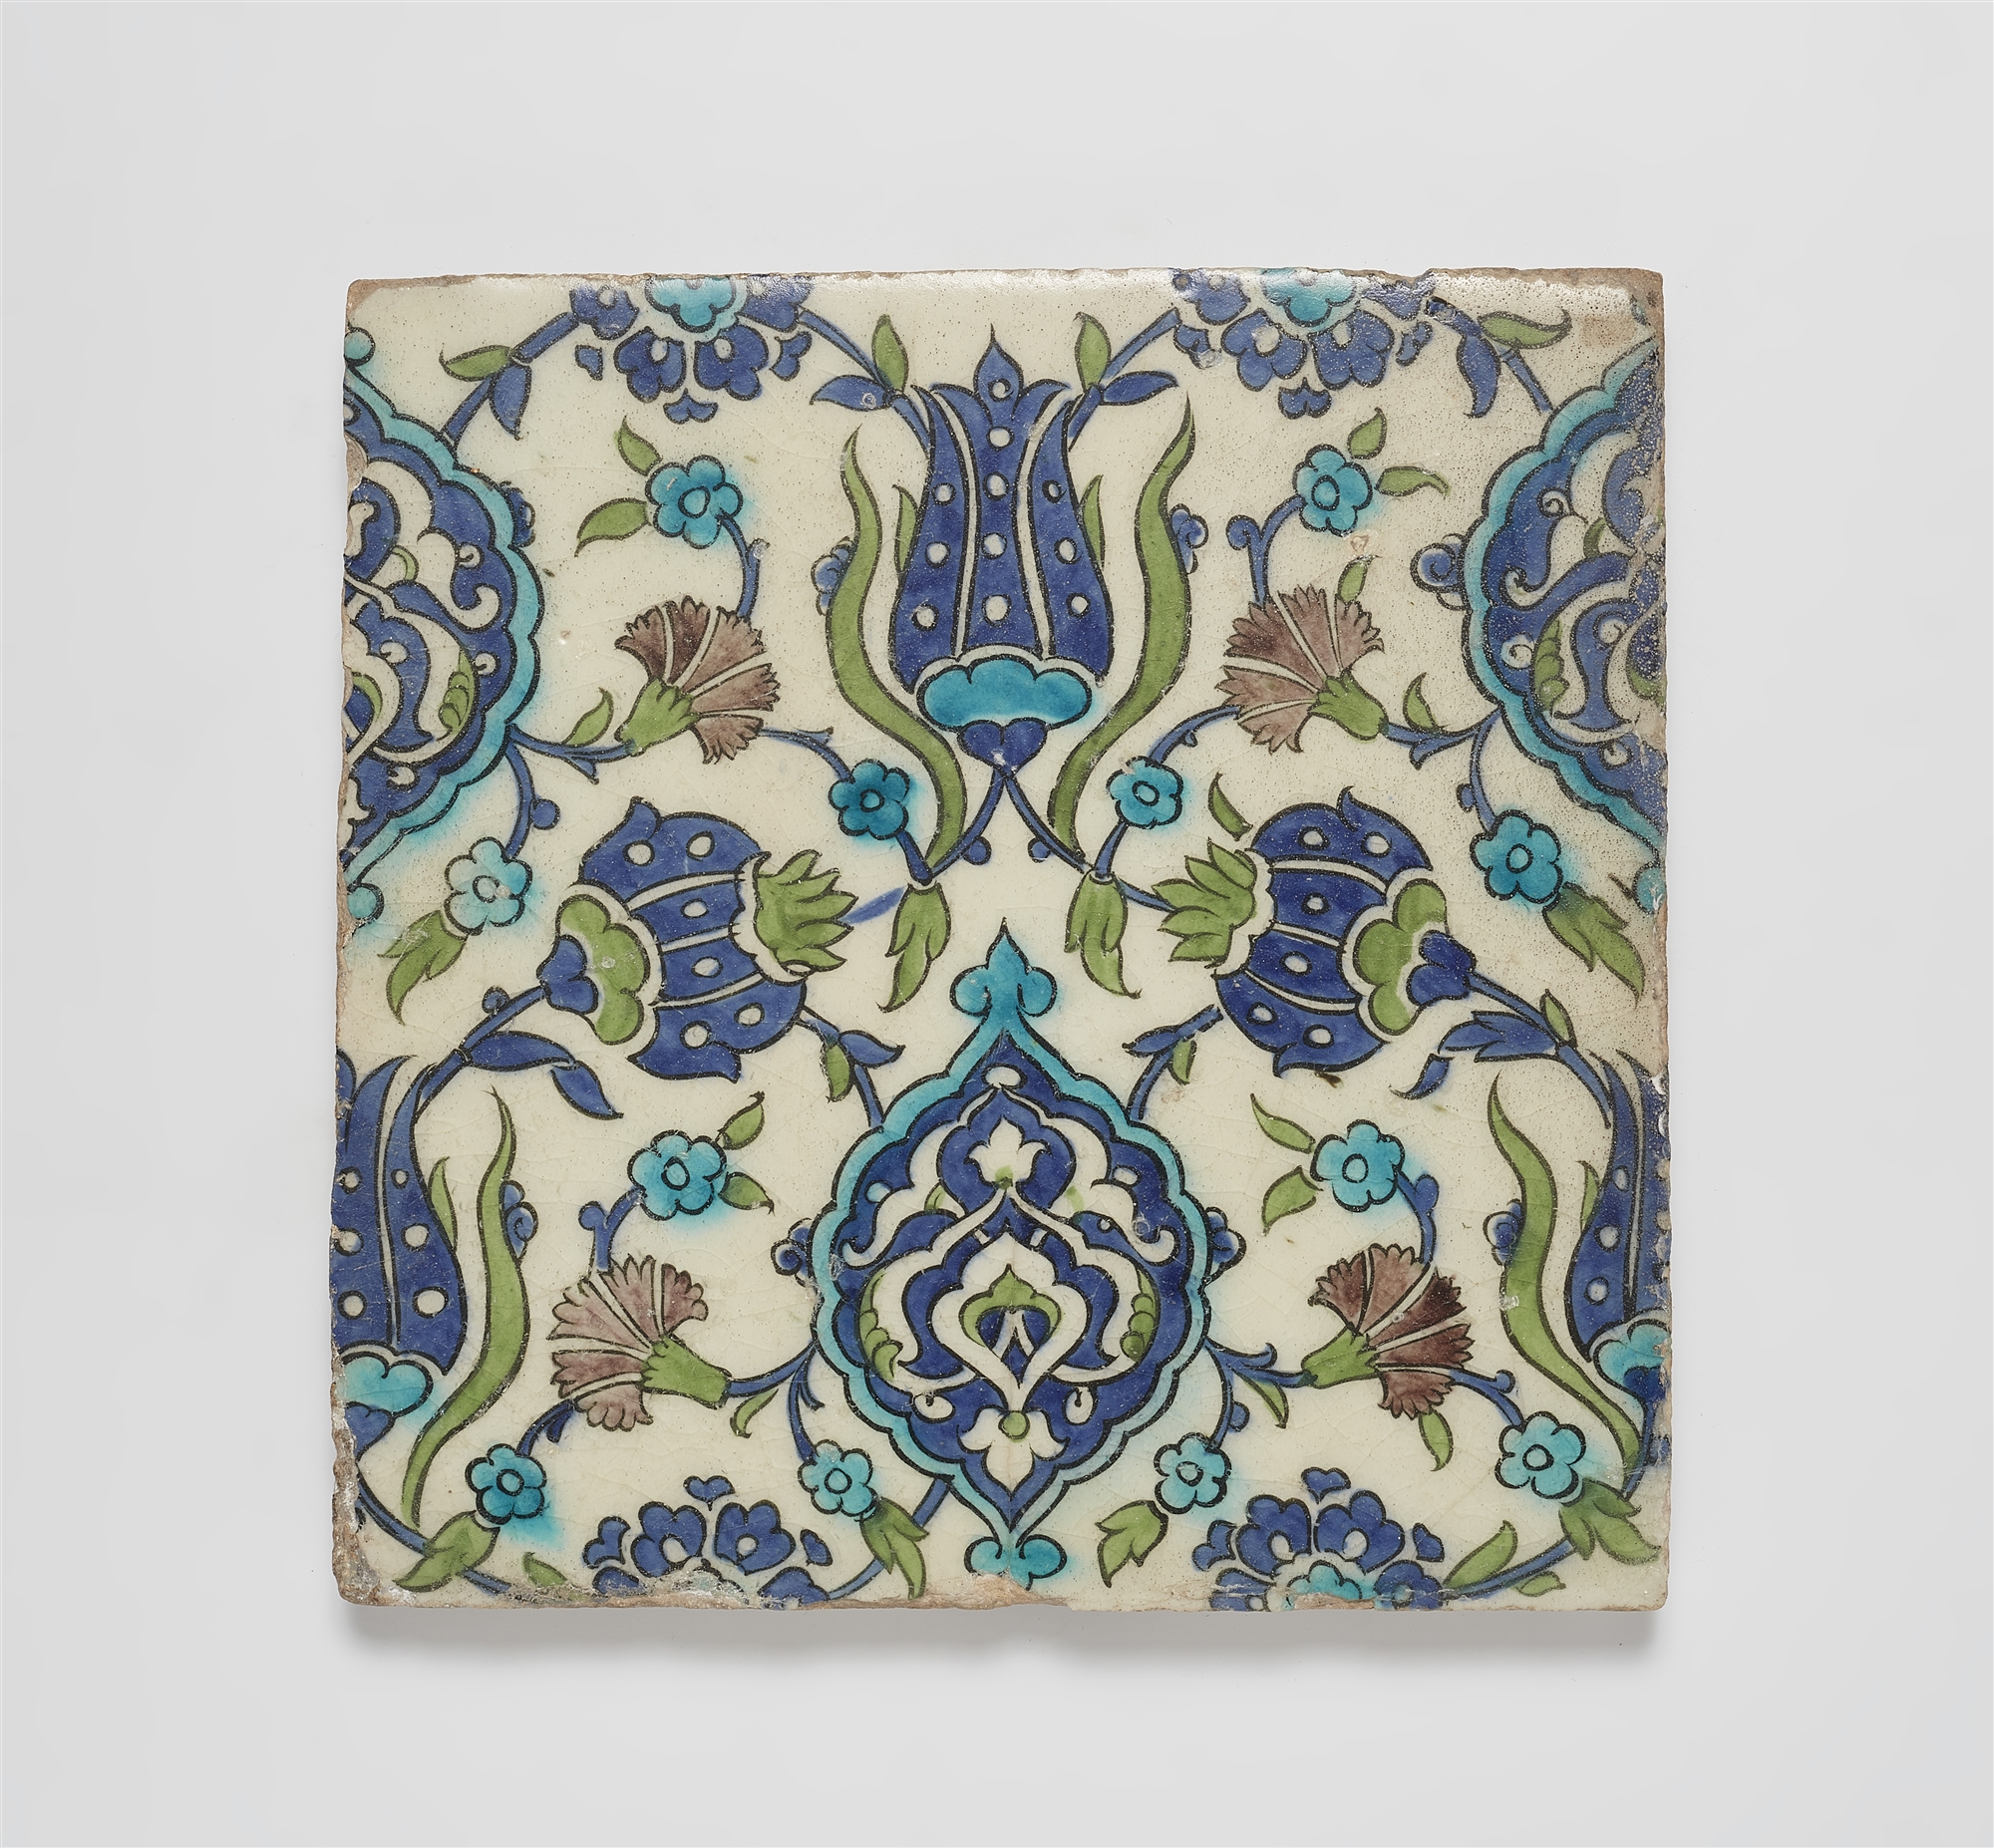 An Ottoman fritware tile